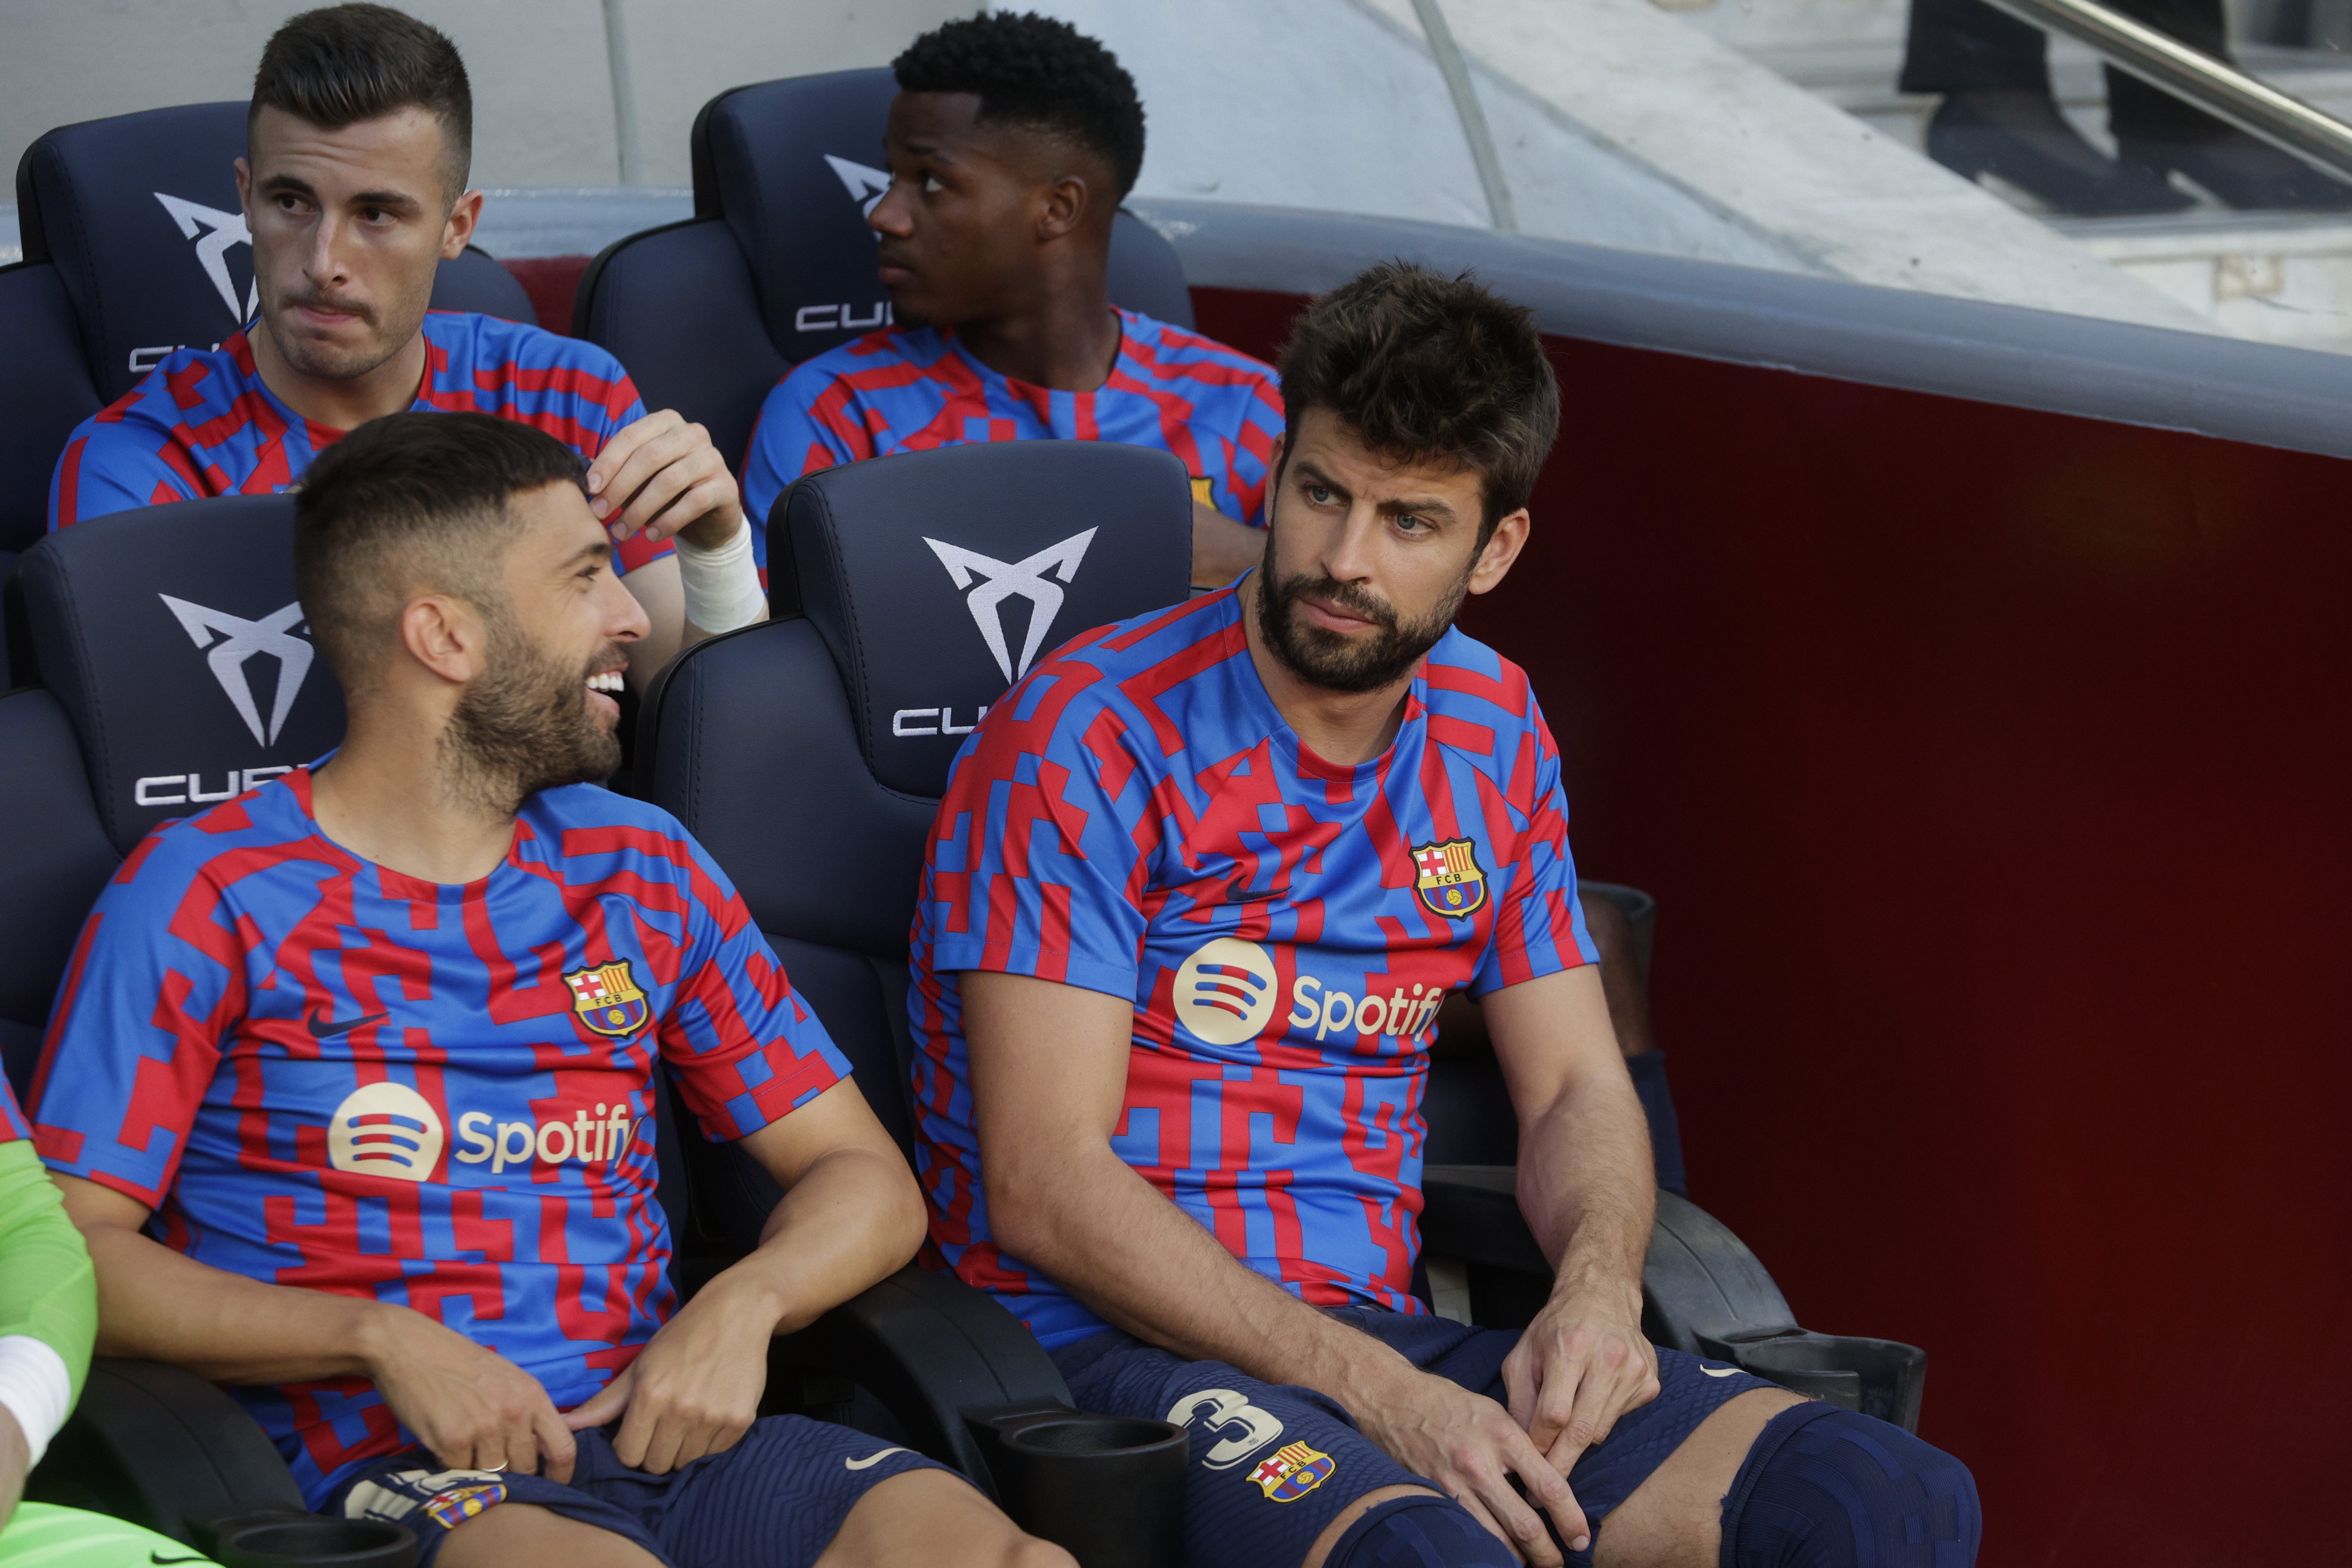 El sustituto de Jordi Alba y Piqué ya ha sido avisado, será el nuevo capitán del Barça